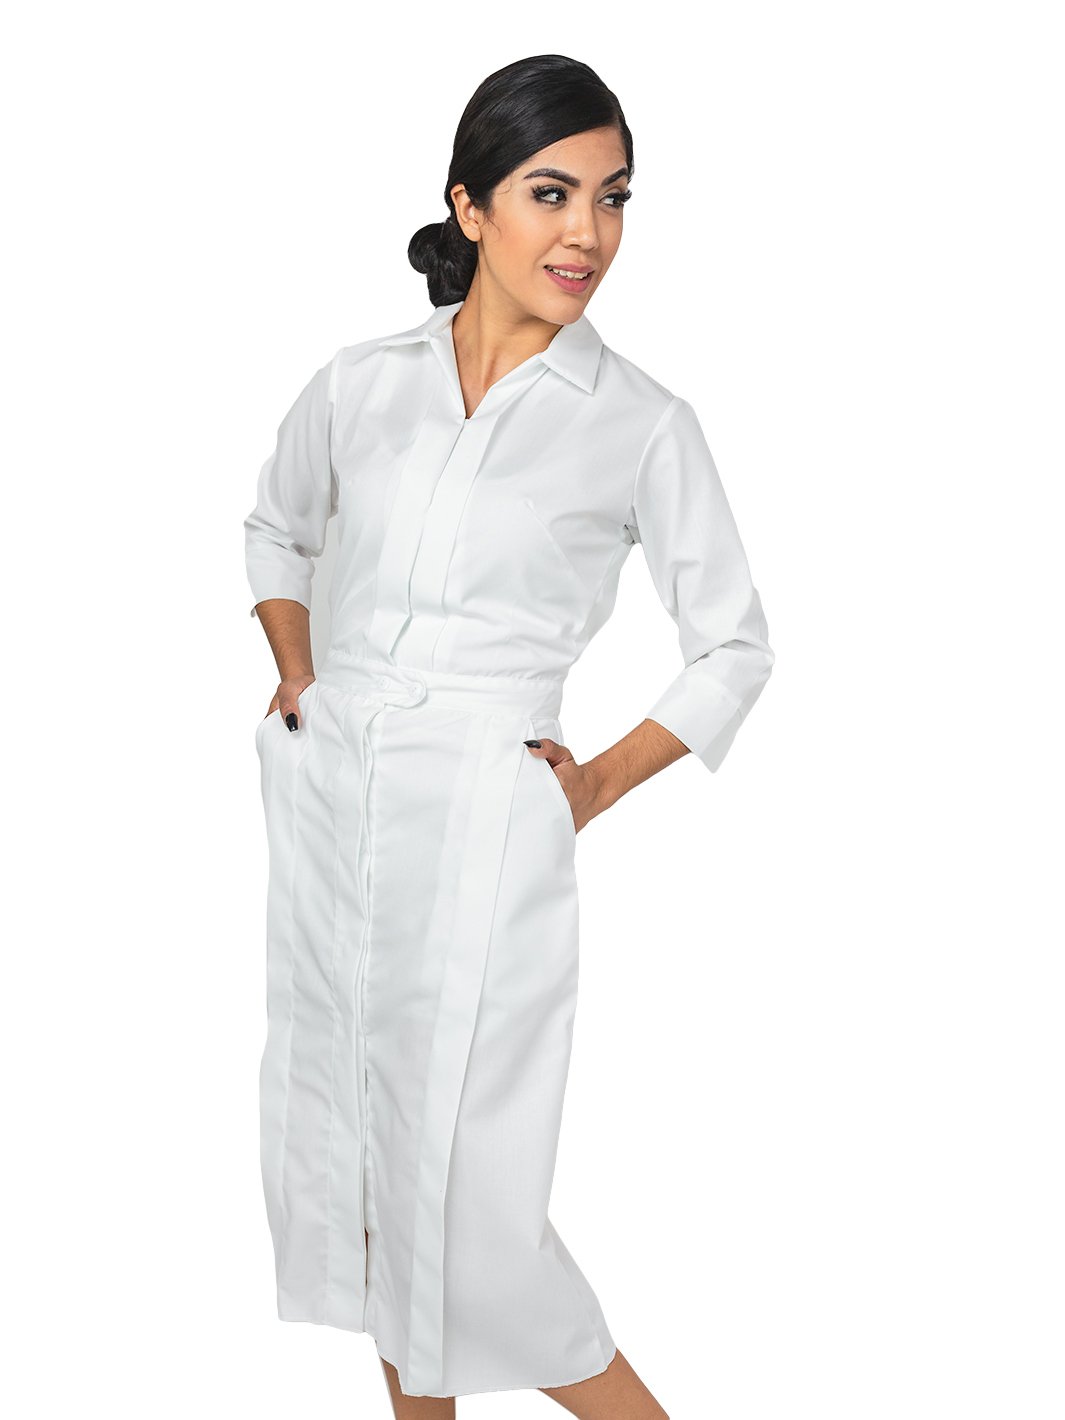 Mujer vistiendo vestido reglamentario para enfermera con bolsas y de manga larga